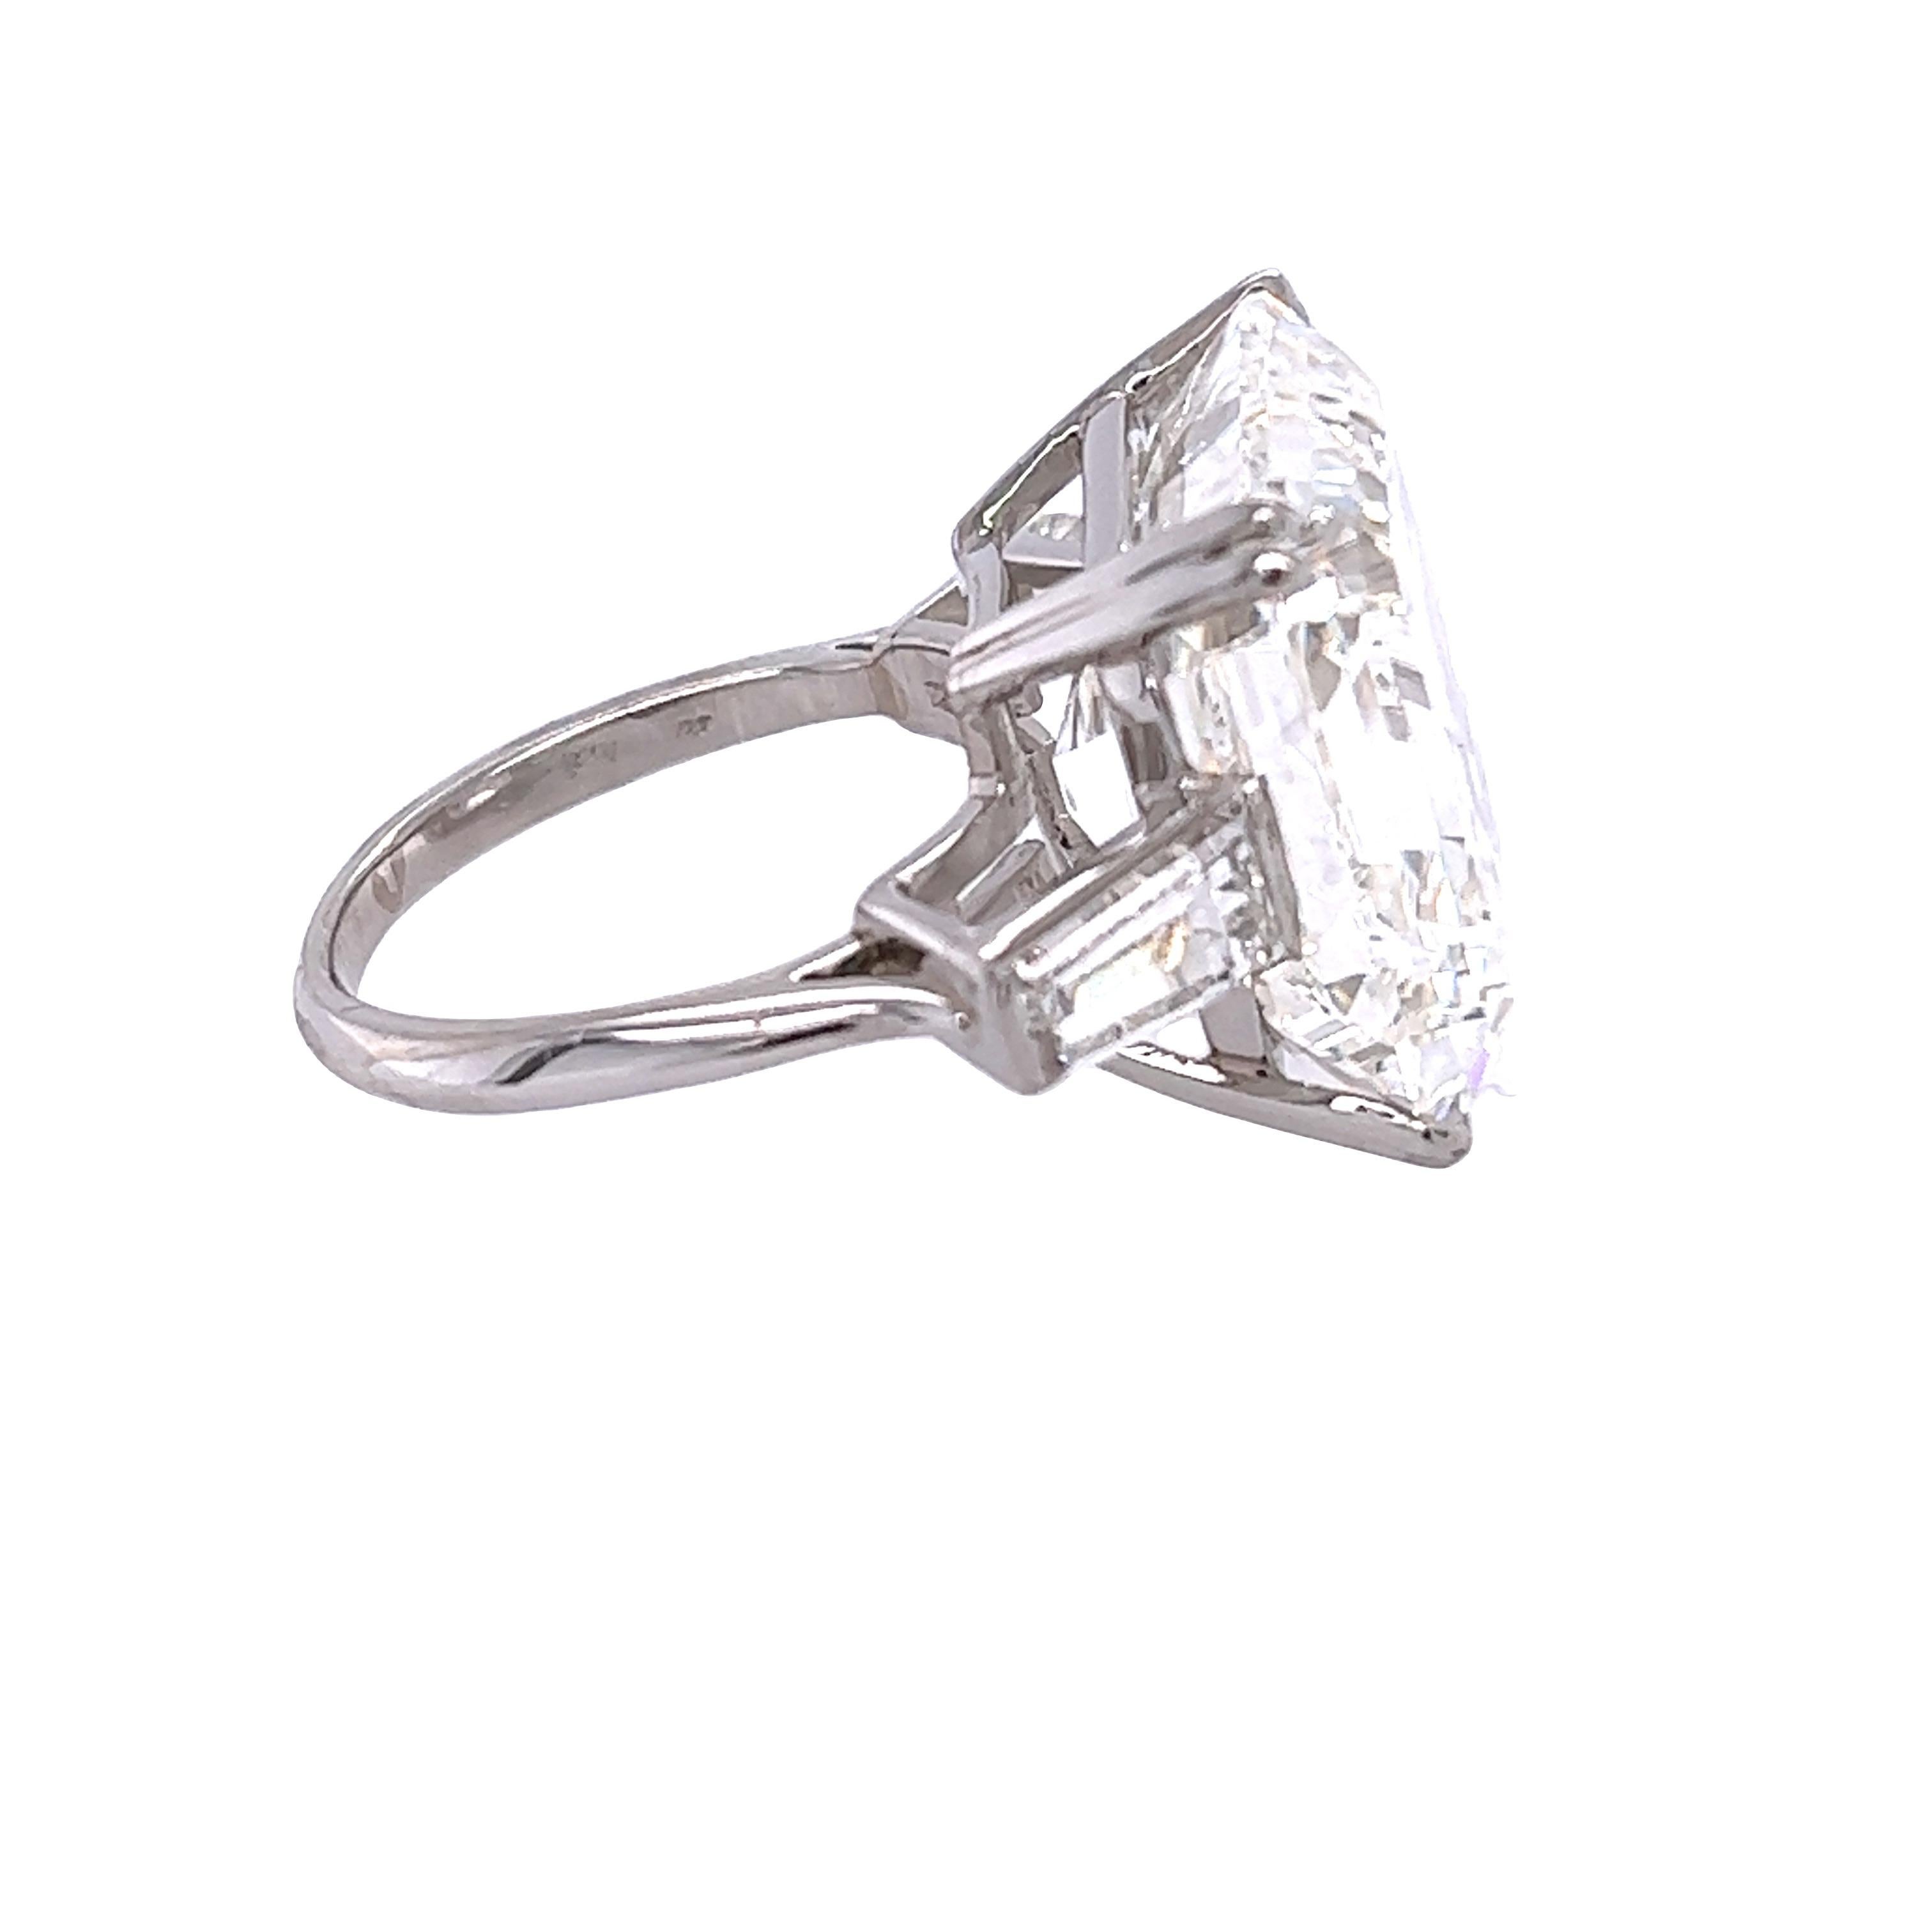 5 carat asscher cut diamond ring